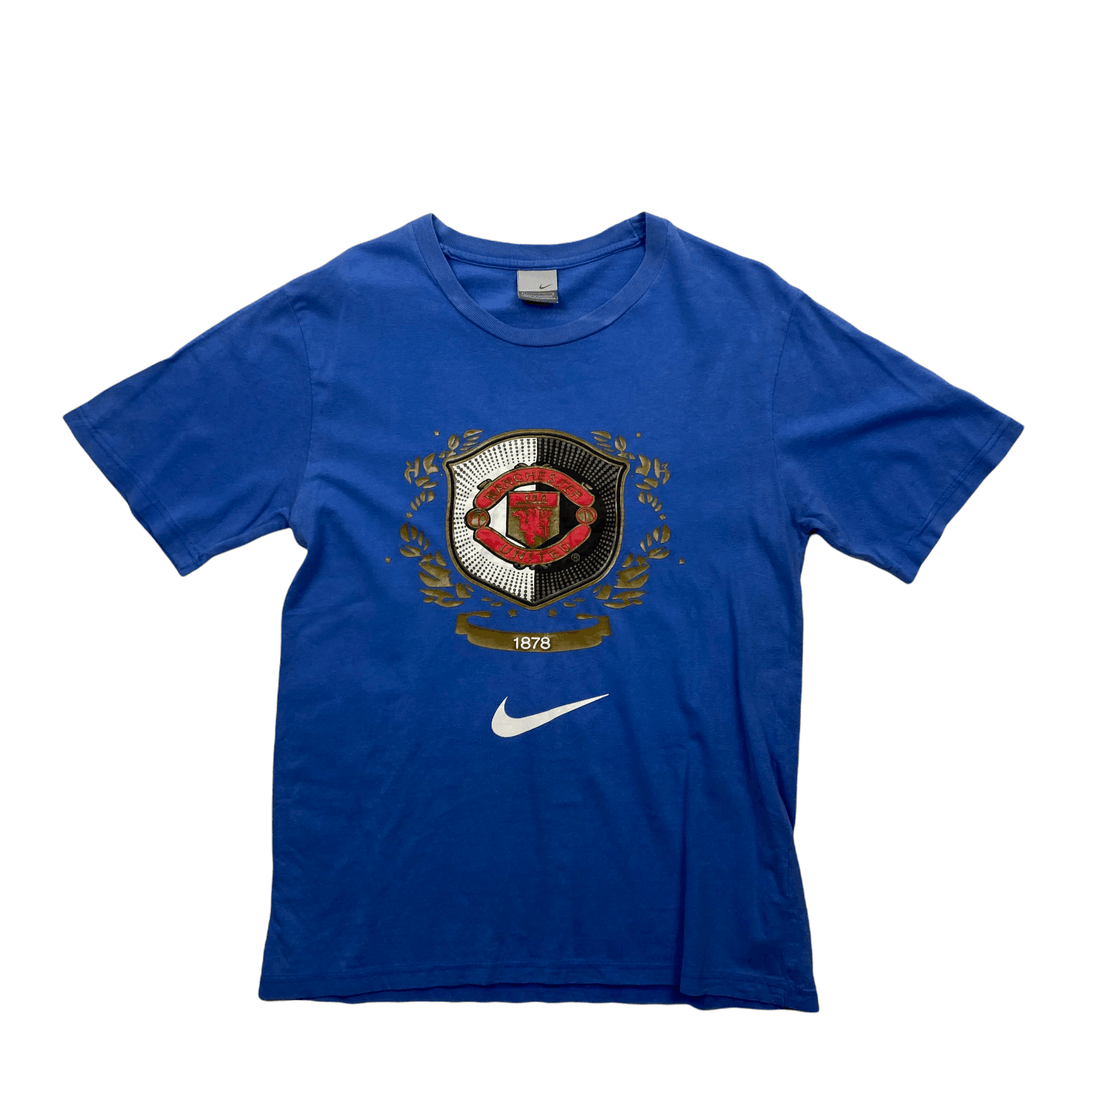 Vintage 90s Blue Nike Manchester United Football Tee - Medium - The Streetwear Studio